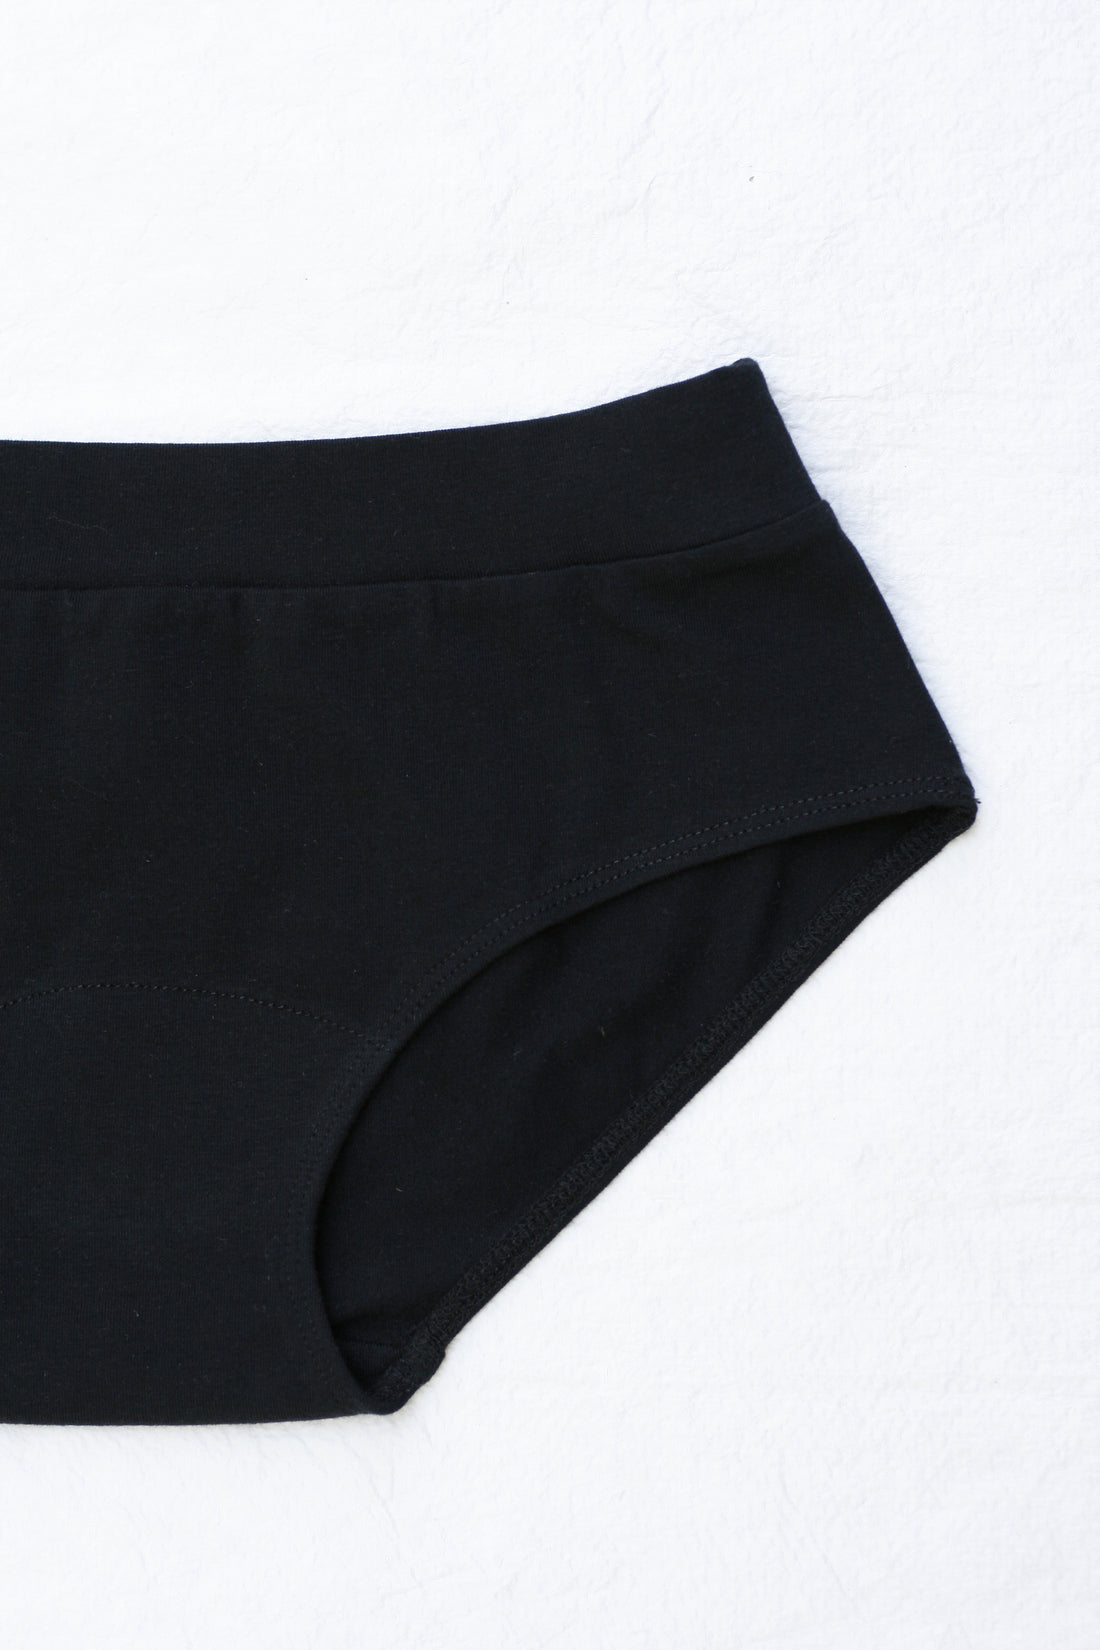 Normcore Cotton Innerwear - Black Brief with Silver Waistband Underwea